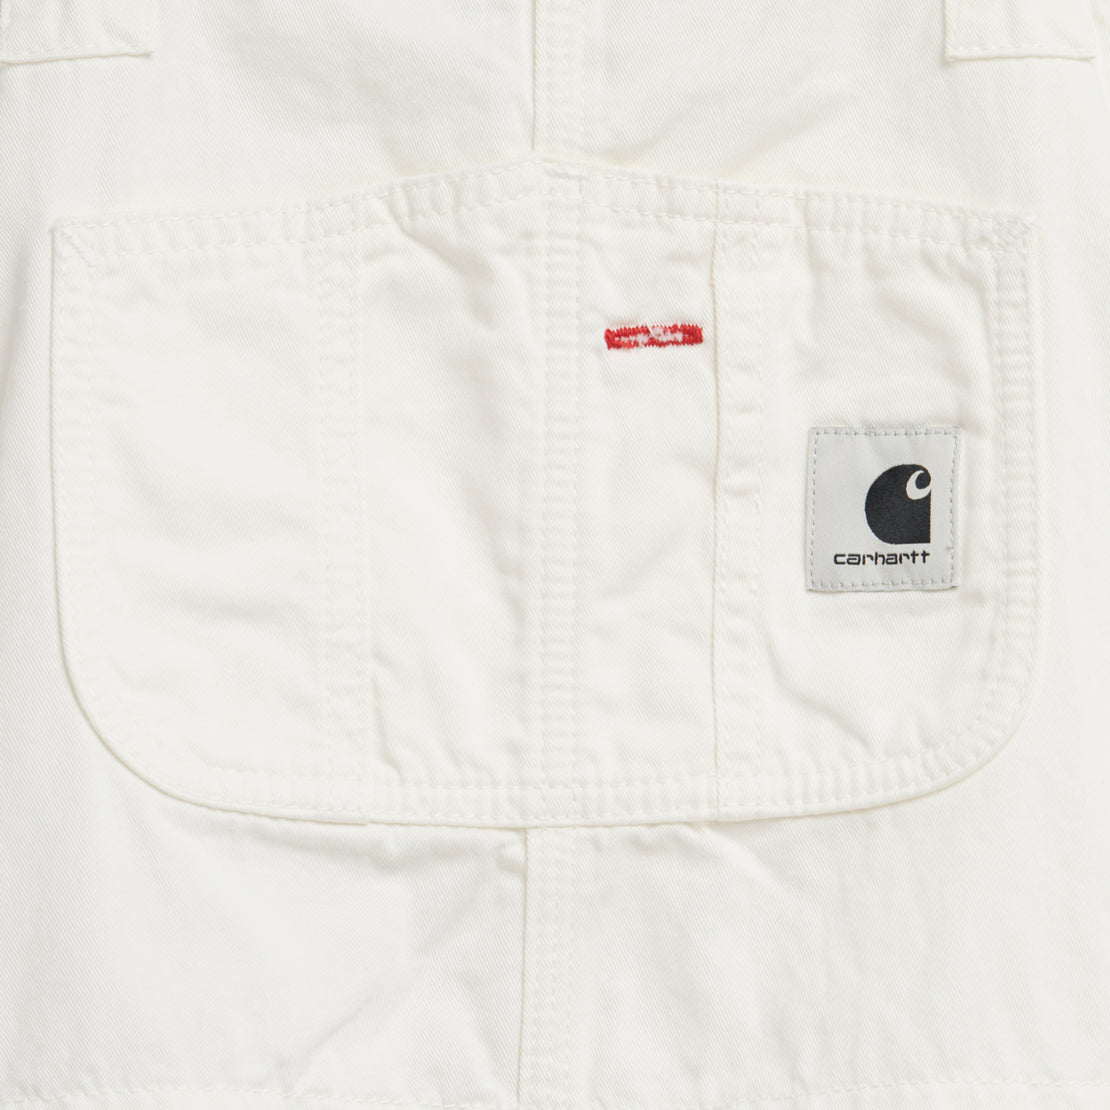 Carhartt WIP bib overalls in white